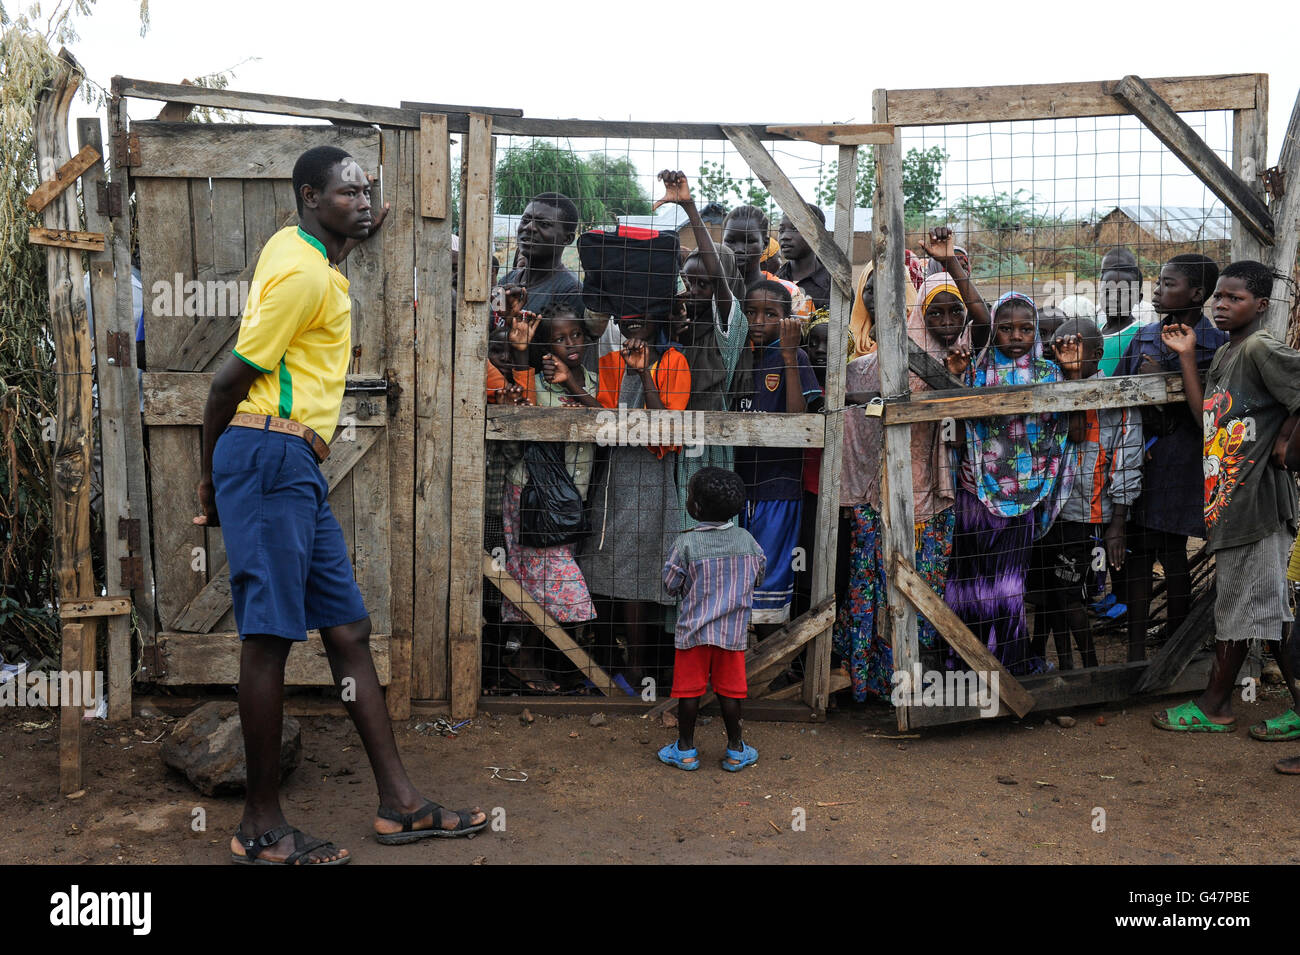 La région de Turkana au Kenya, le HCR, le camp de réfugiés de Kakuma où 80,000 permanent des réfugiés de Somalie, l'Éthiopie, le Soudan du Sud sont vivants, les enfants à la porte de l'ÉCOLE PRIMAIRE PALUTAKA Banque D'Images